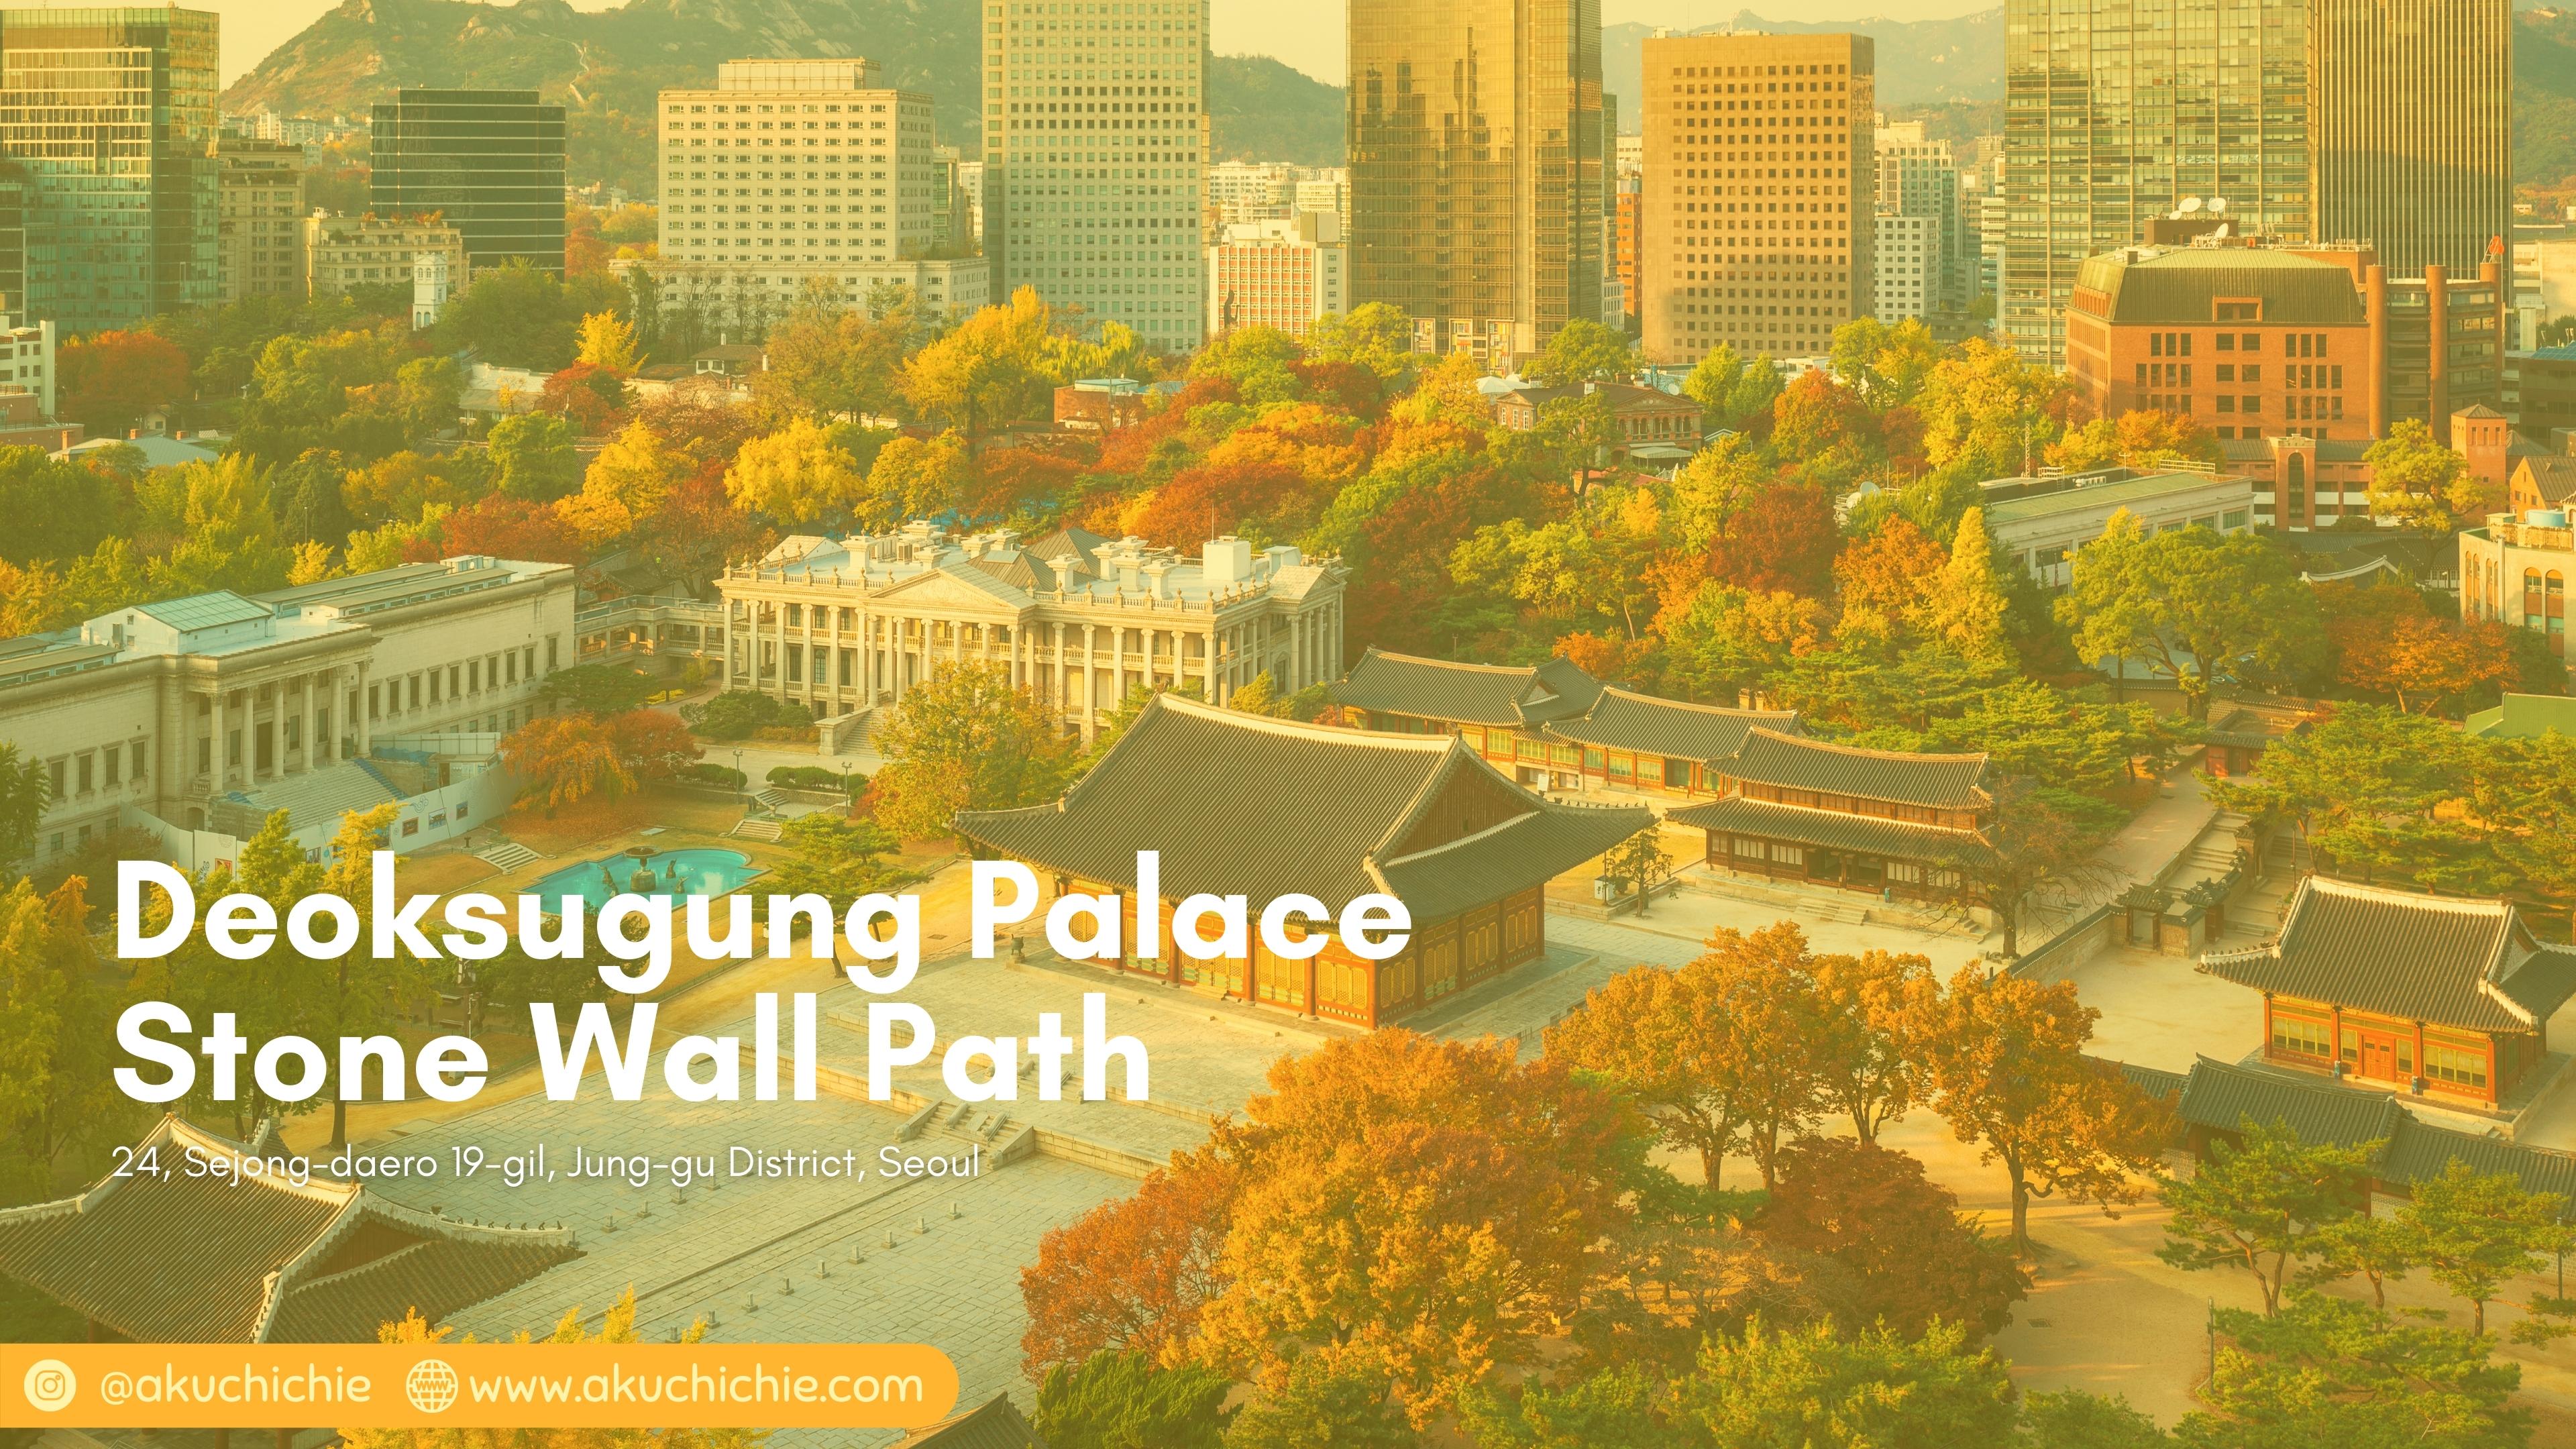 Deoksugung Palace Stone Wall Path